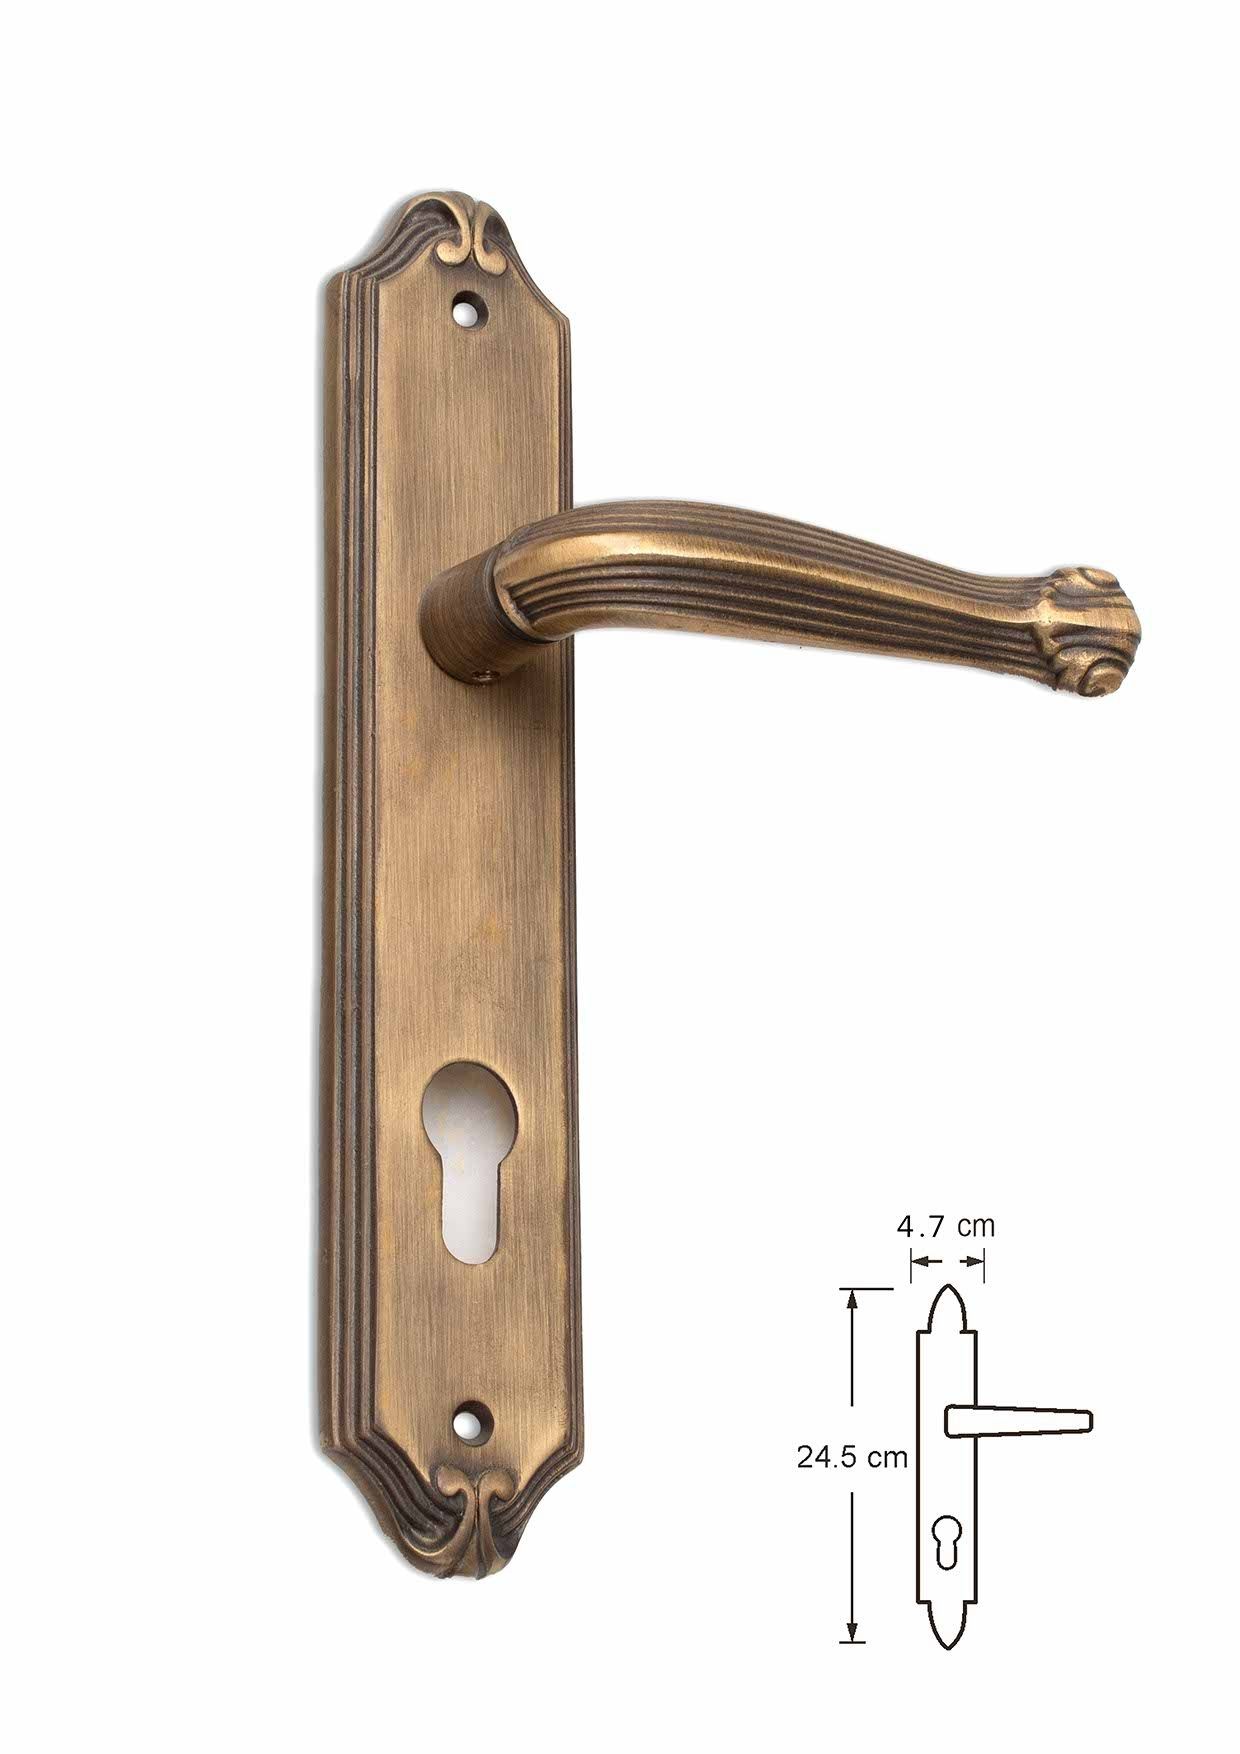 Custom Brass Pull Handles: Artisanal Elegance for Your Doors